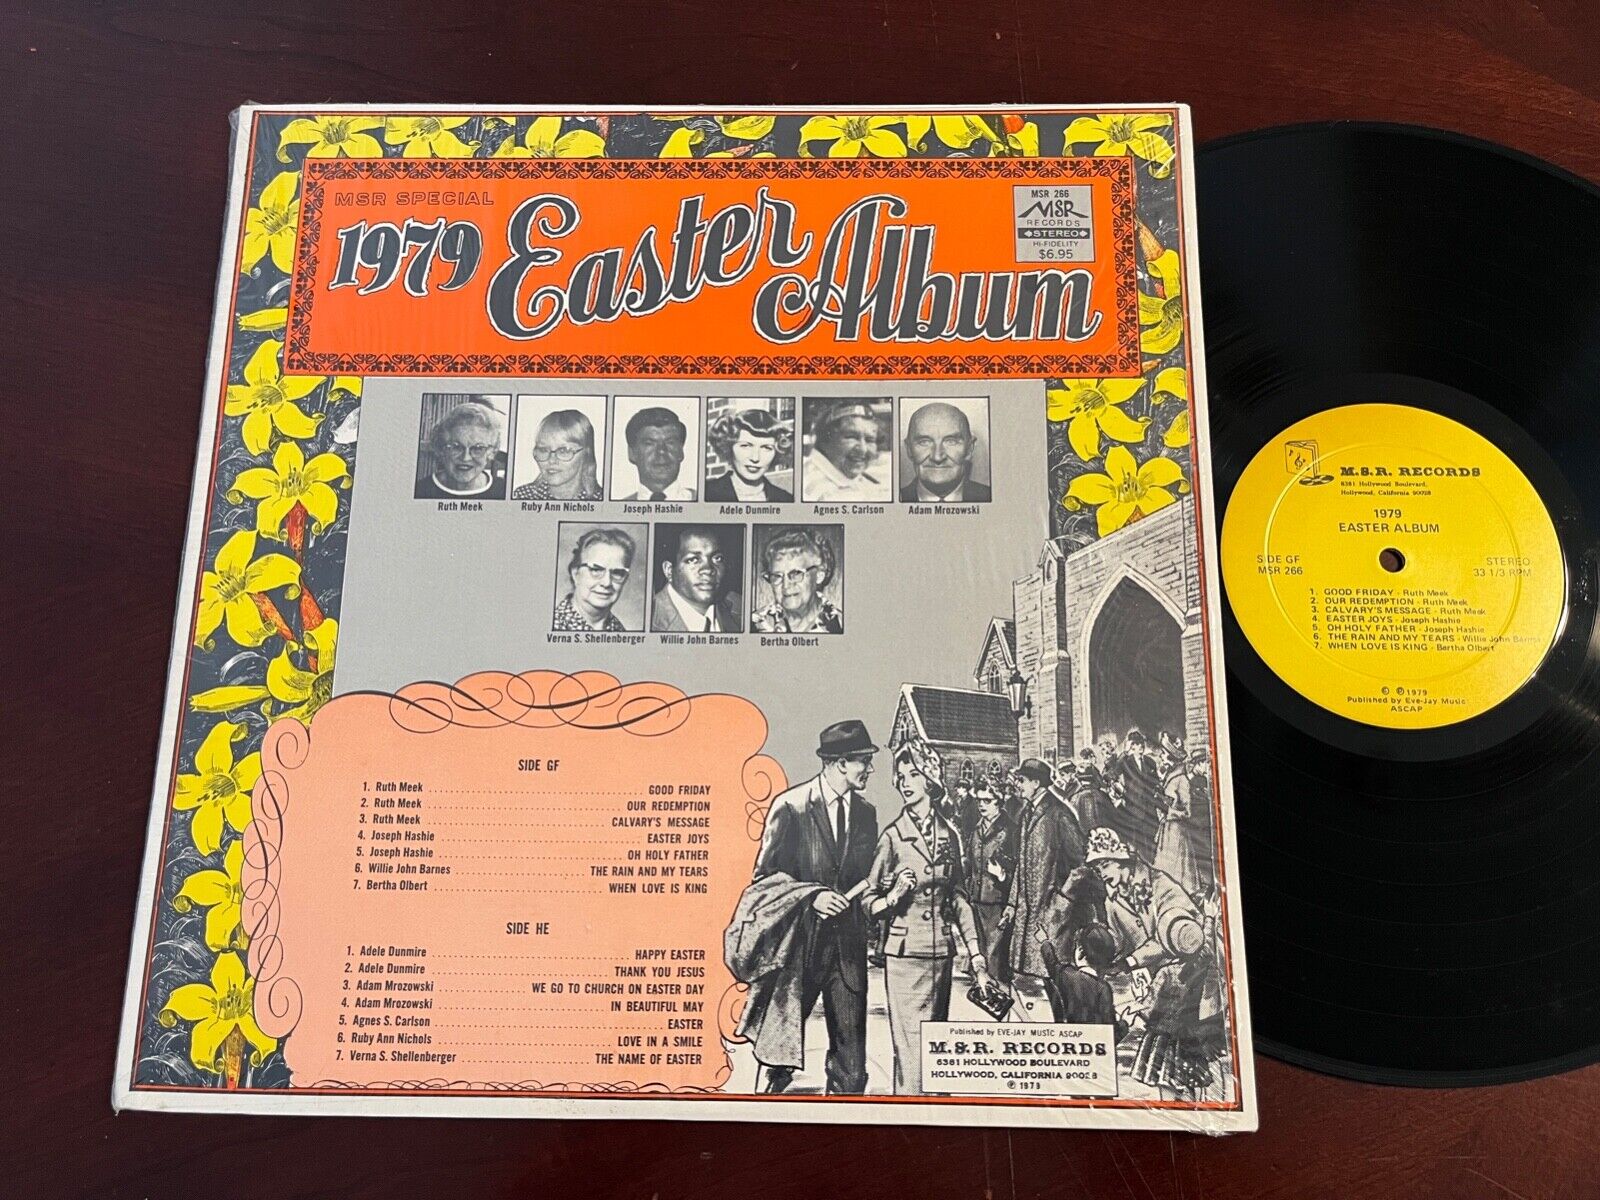 THE SISTERHOOD - MSR SPECIAL 1979 EASTER ALBUM VINTAGE MSR RECORDS POP ROCK LP